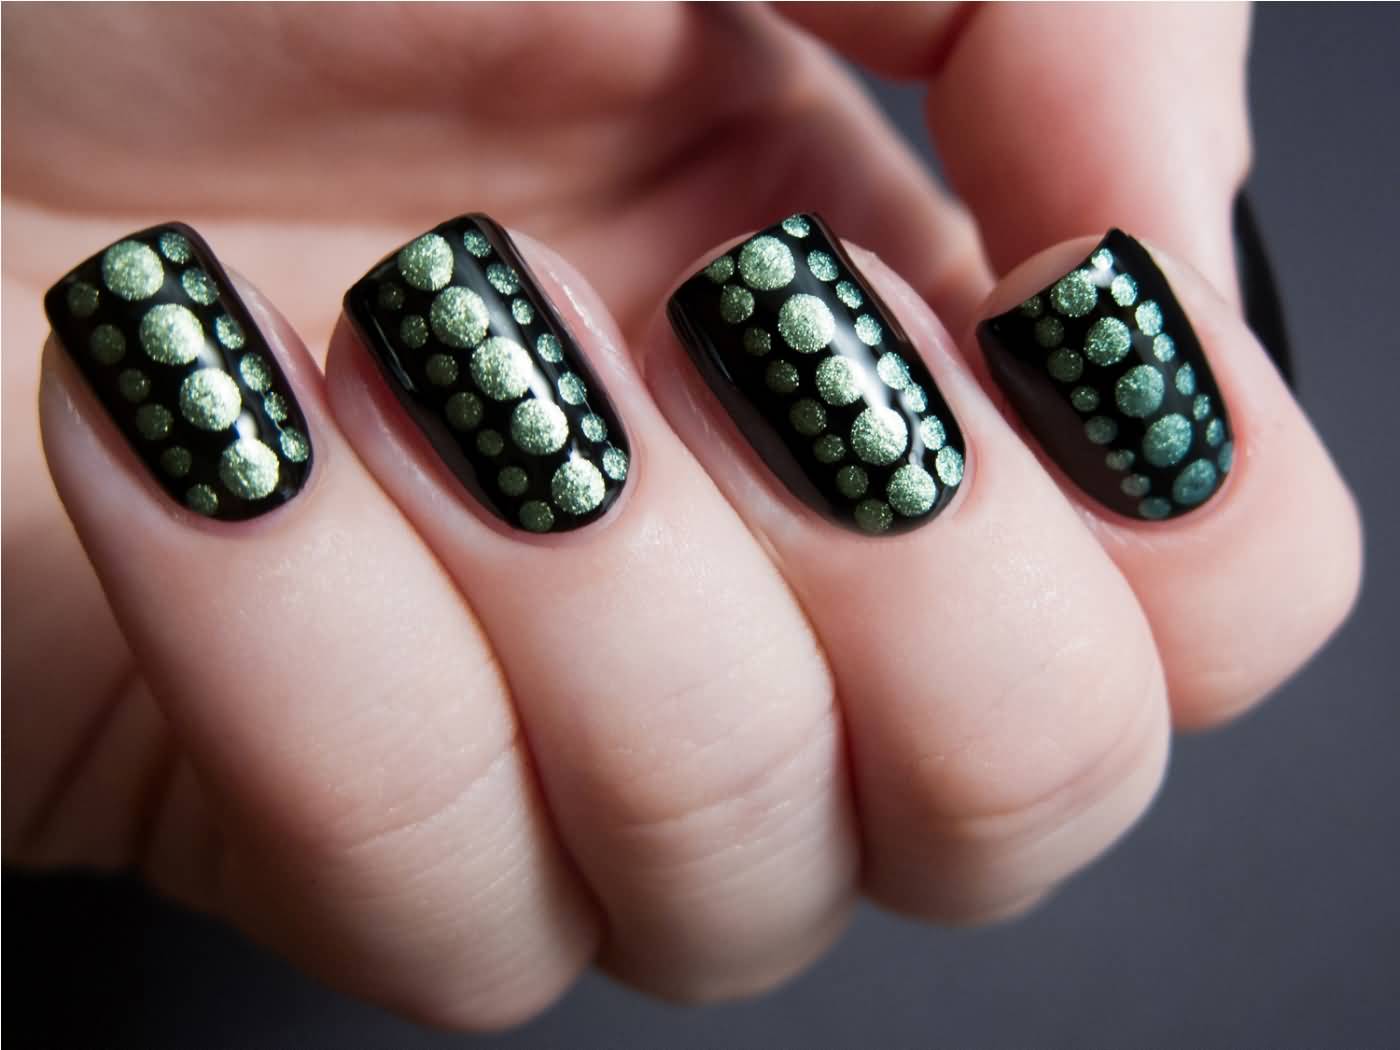 Black Nails With Green Polka Dots Nail Art